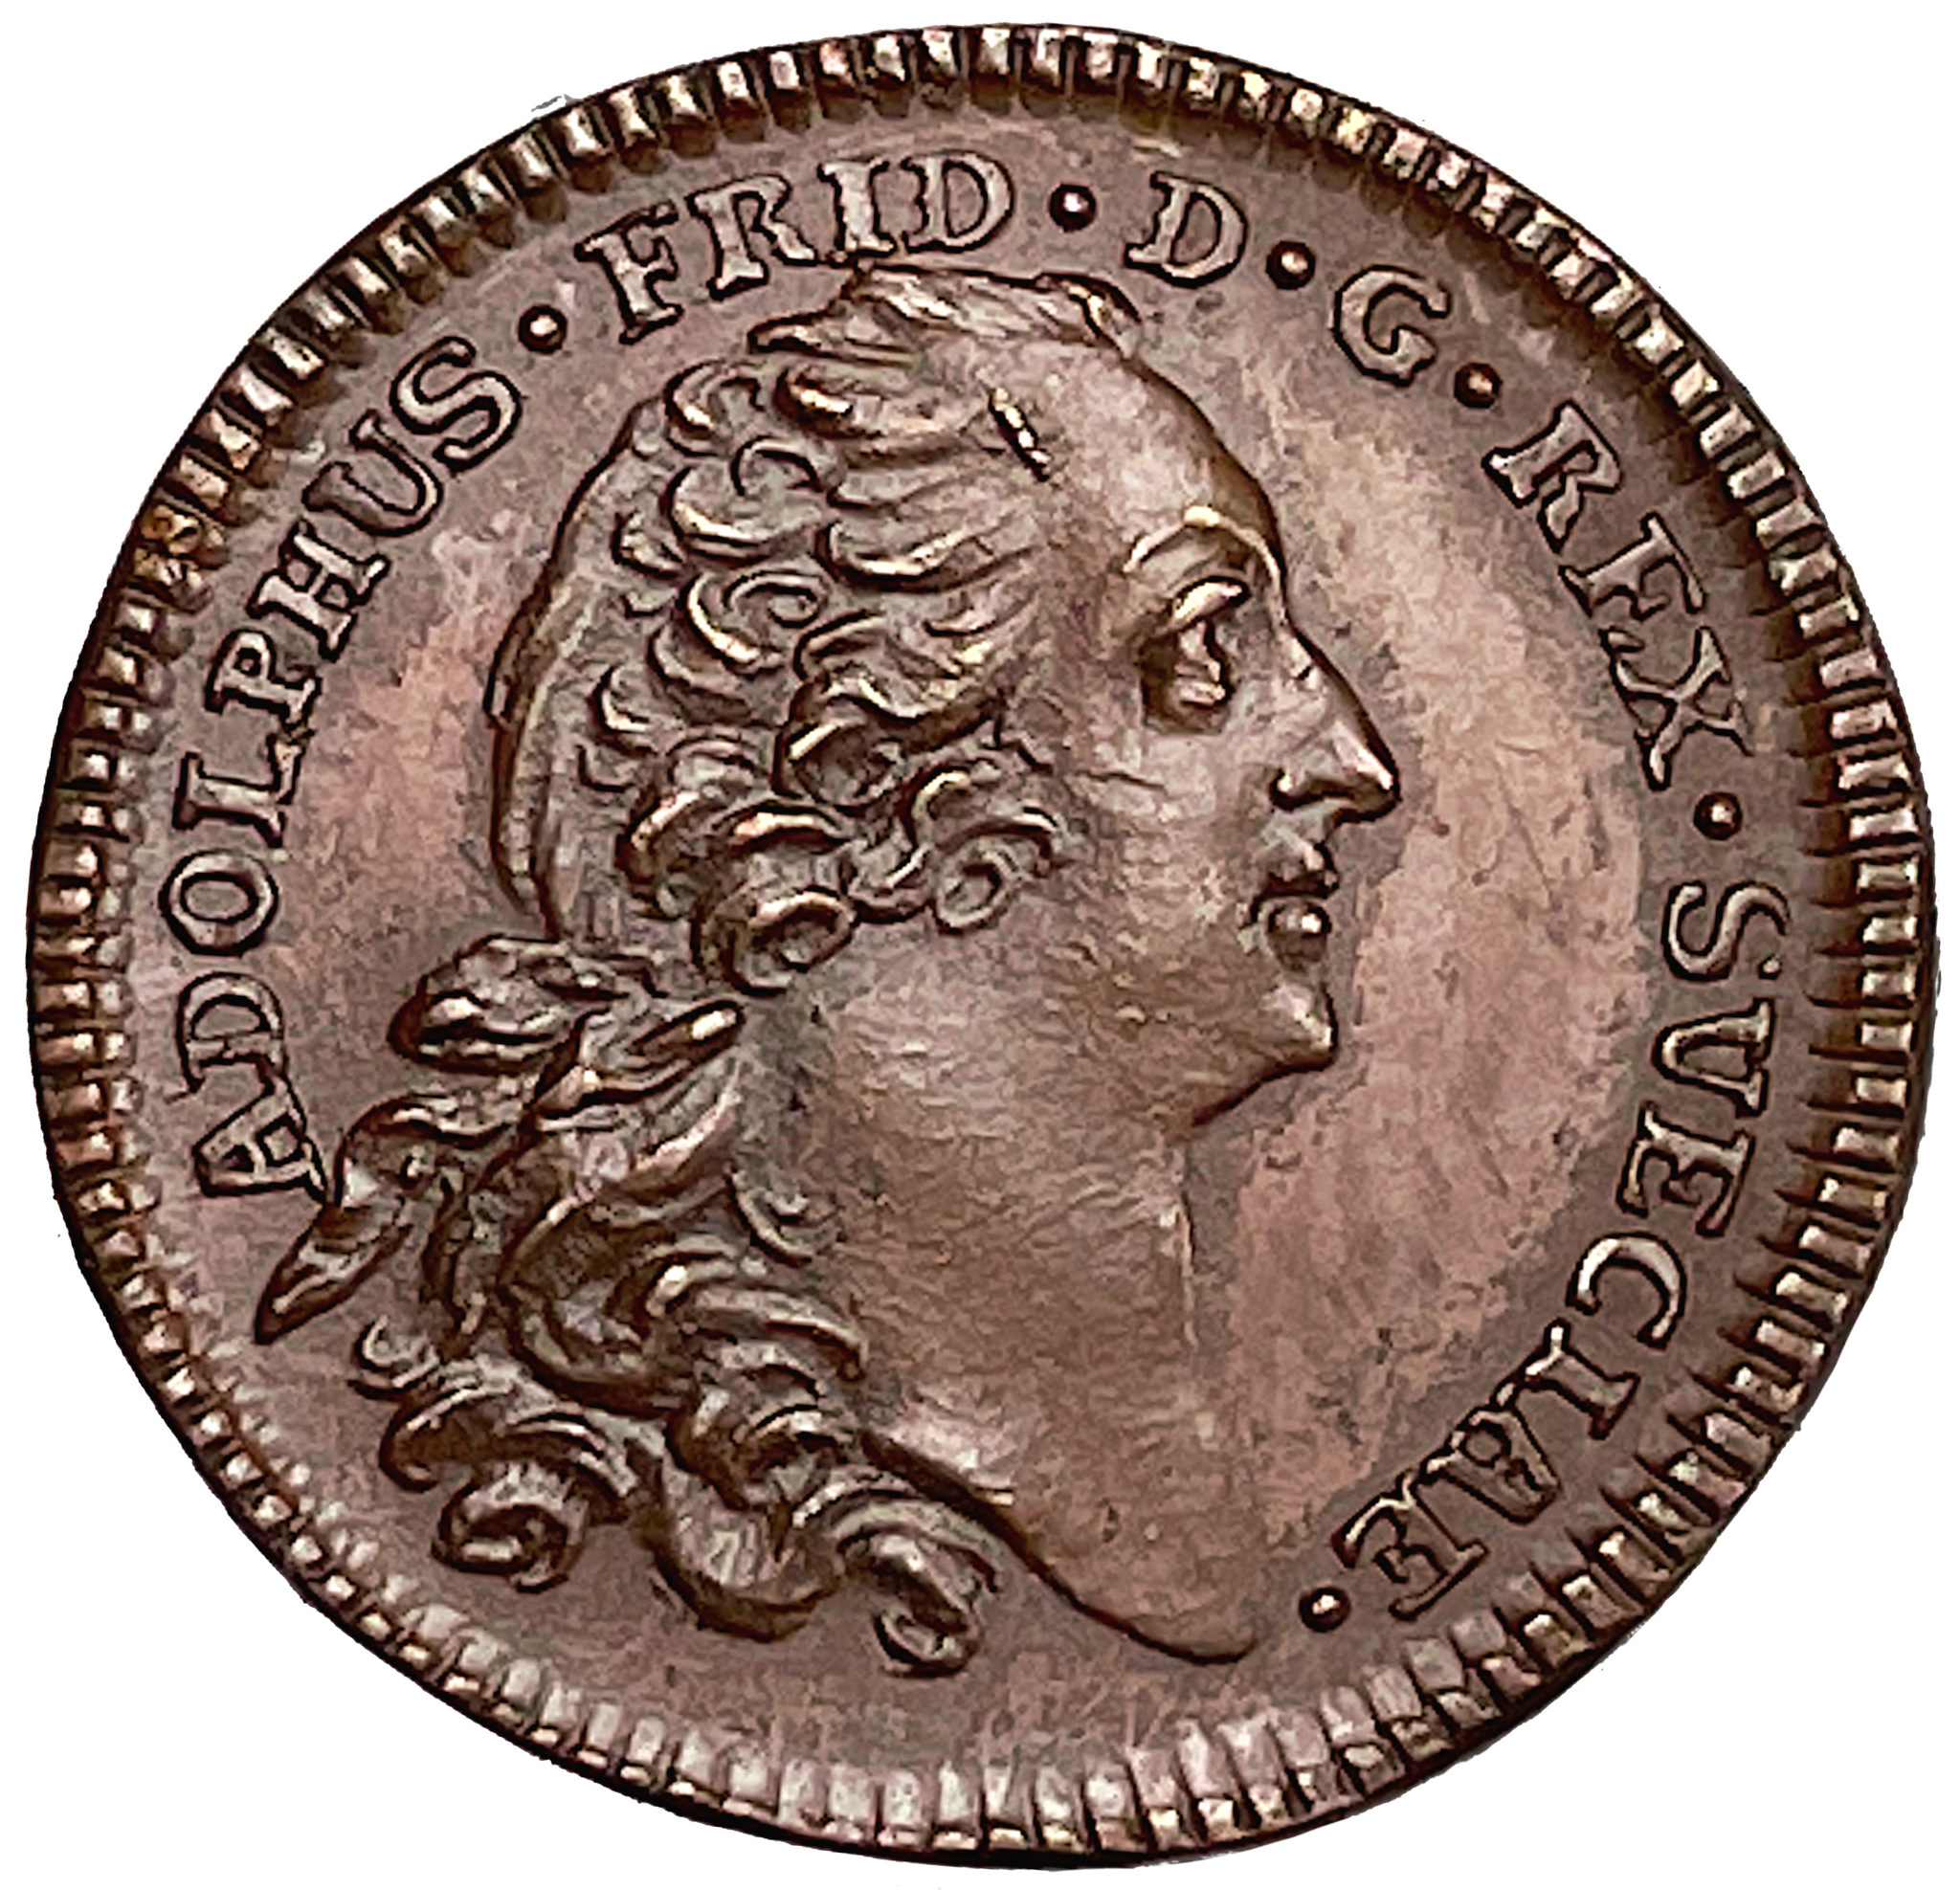 Adolf Fredrik - 1/2 Dukat 1754/55 - Tidigare opublicerat avslag i brons - Extremt sällsynt - RRR